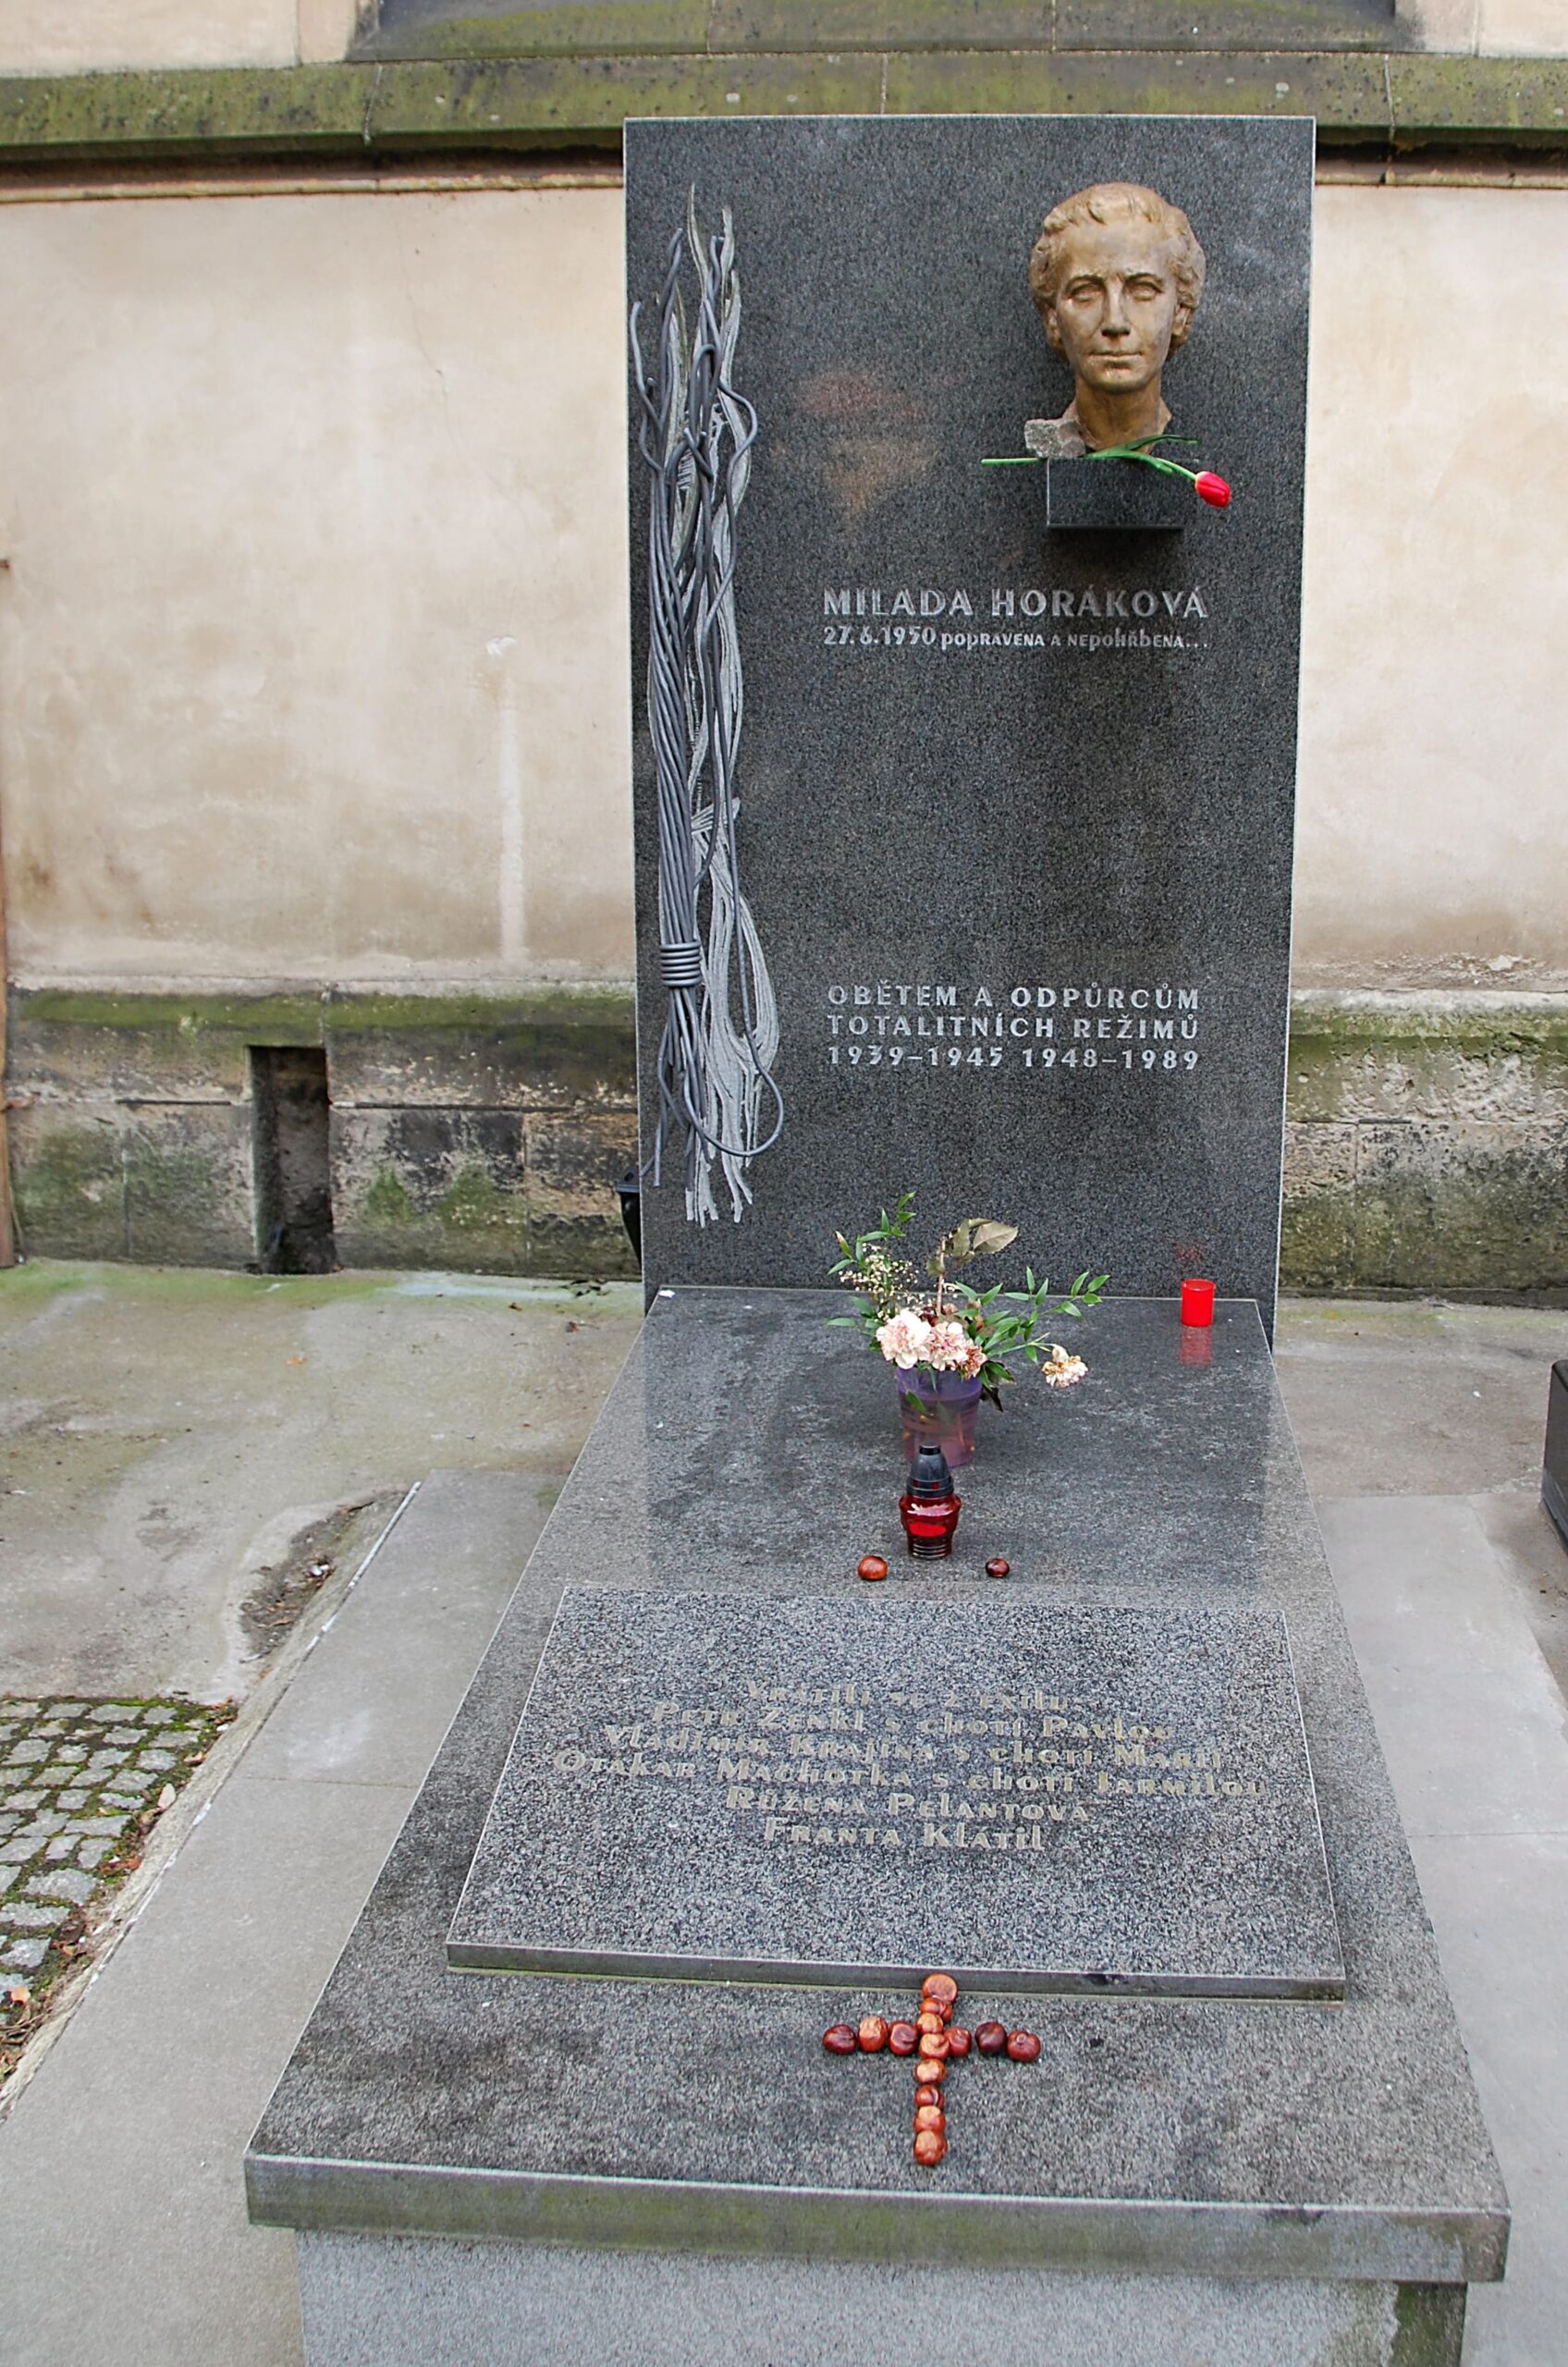 Miladu Horákovou připomíná na Vyšehradě tento náhrobek, věnovaný i dalším obětem totalitních režimů. (Foto: Miloslav Čech)